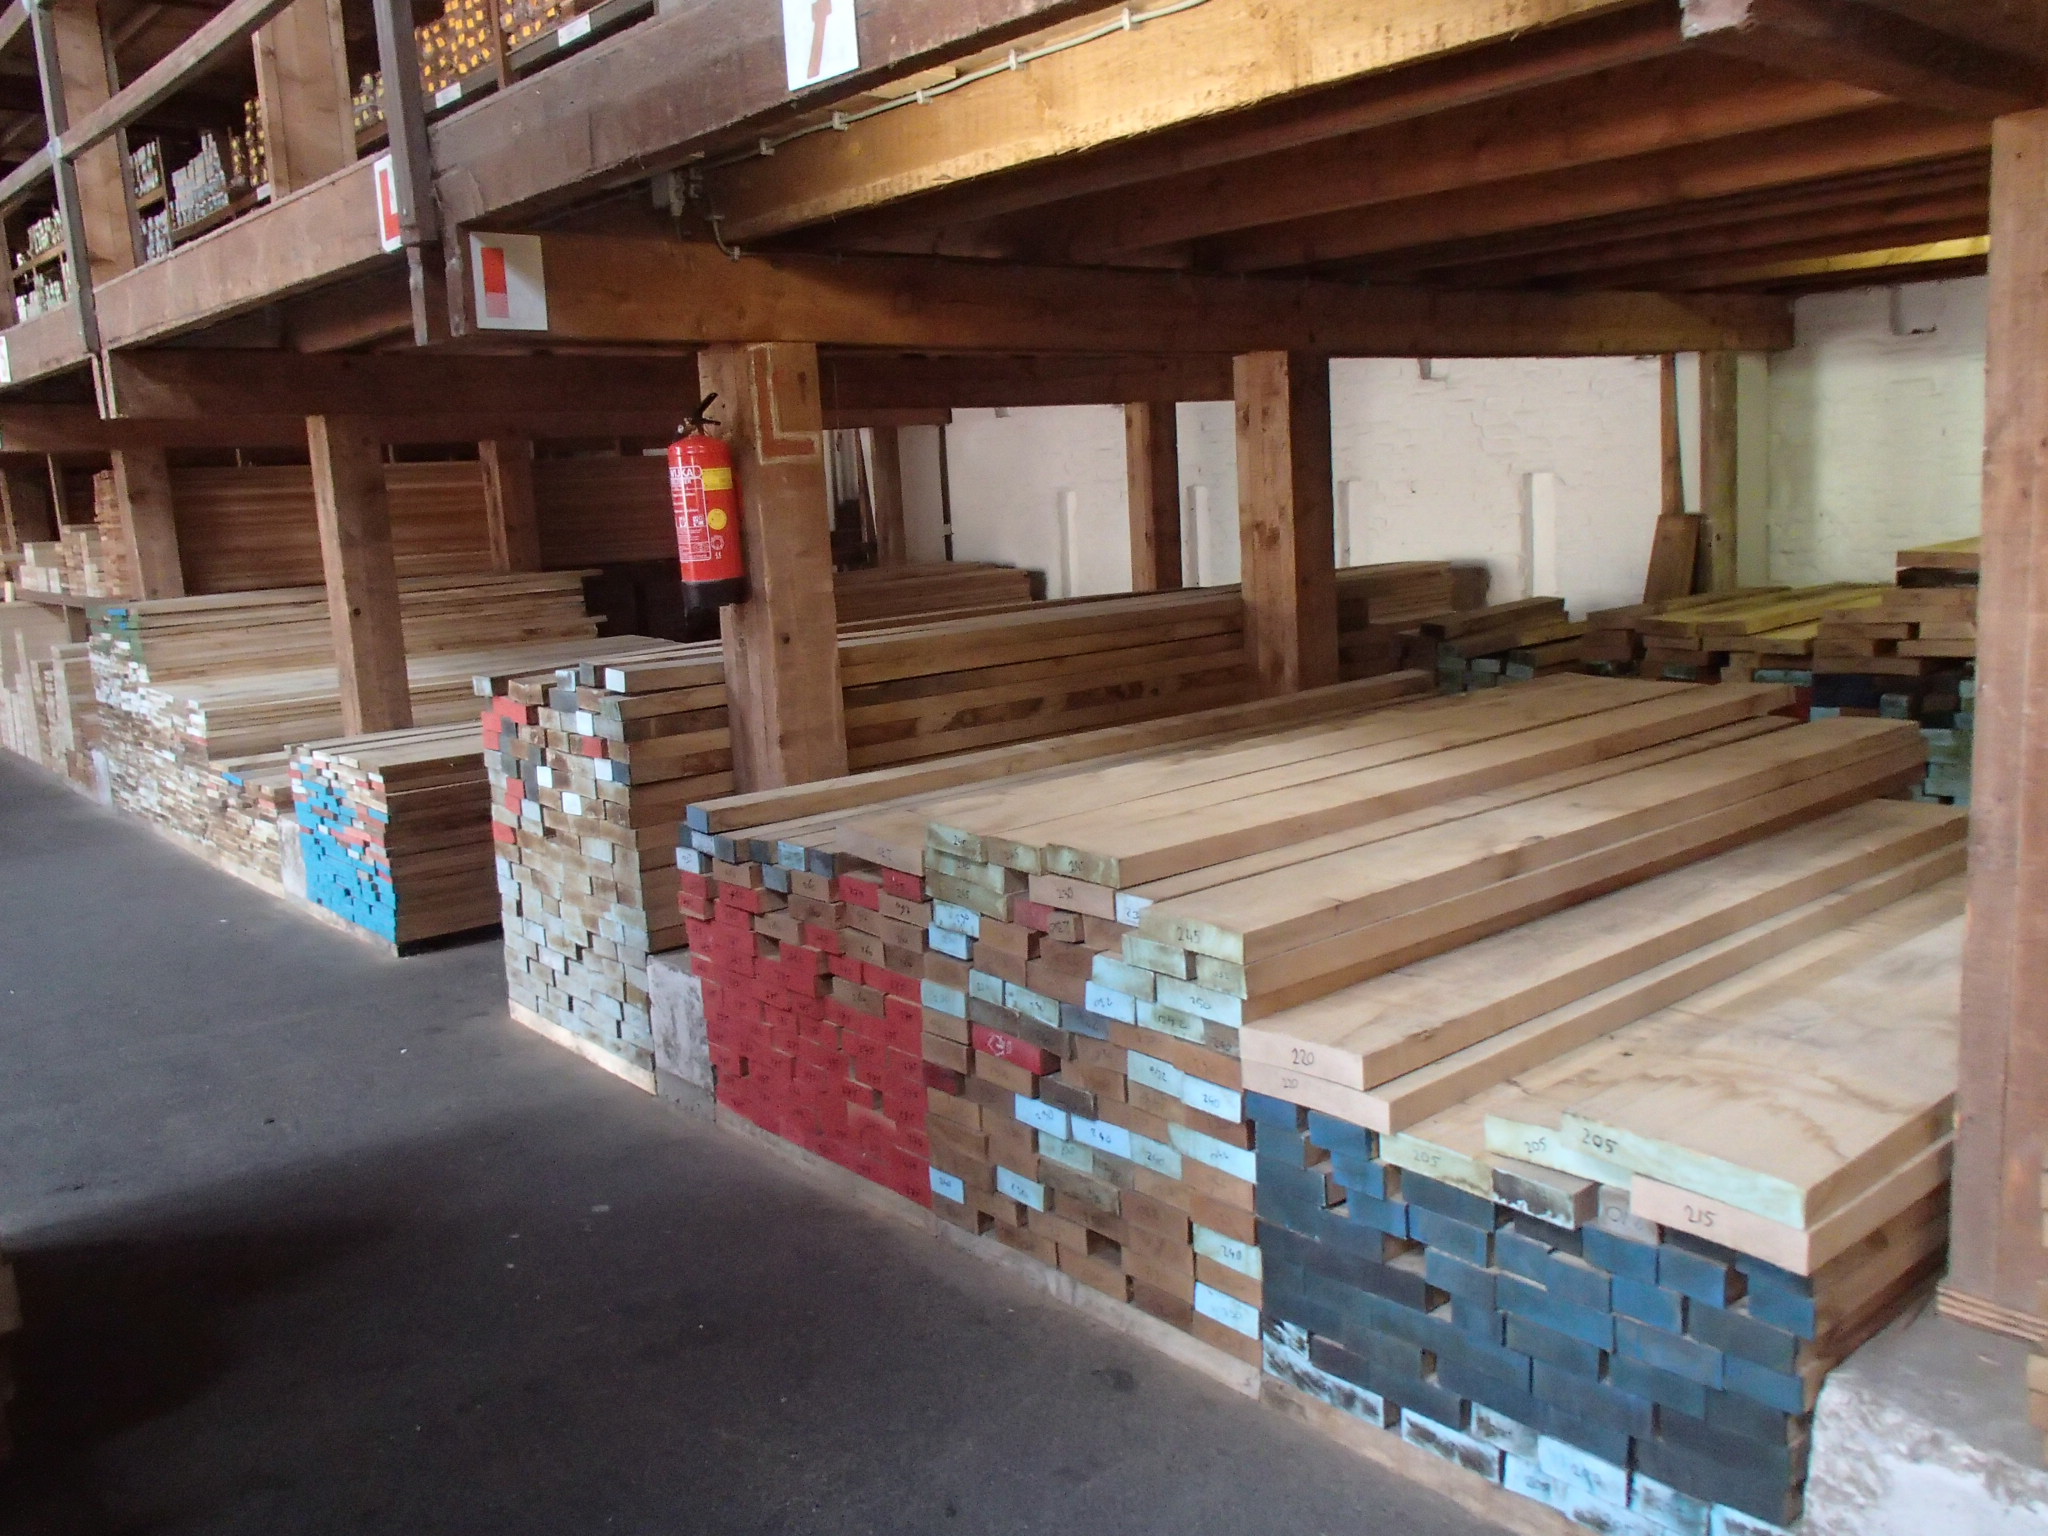 Dicteren uitlokken Herkenning Eiken planken: foutvrij gedroogd meubelhout